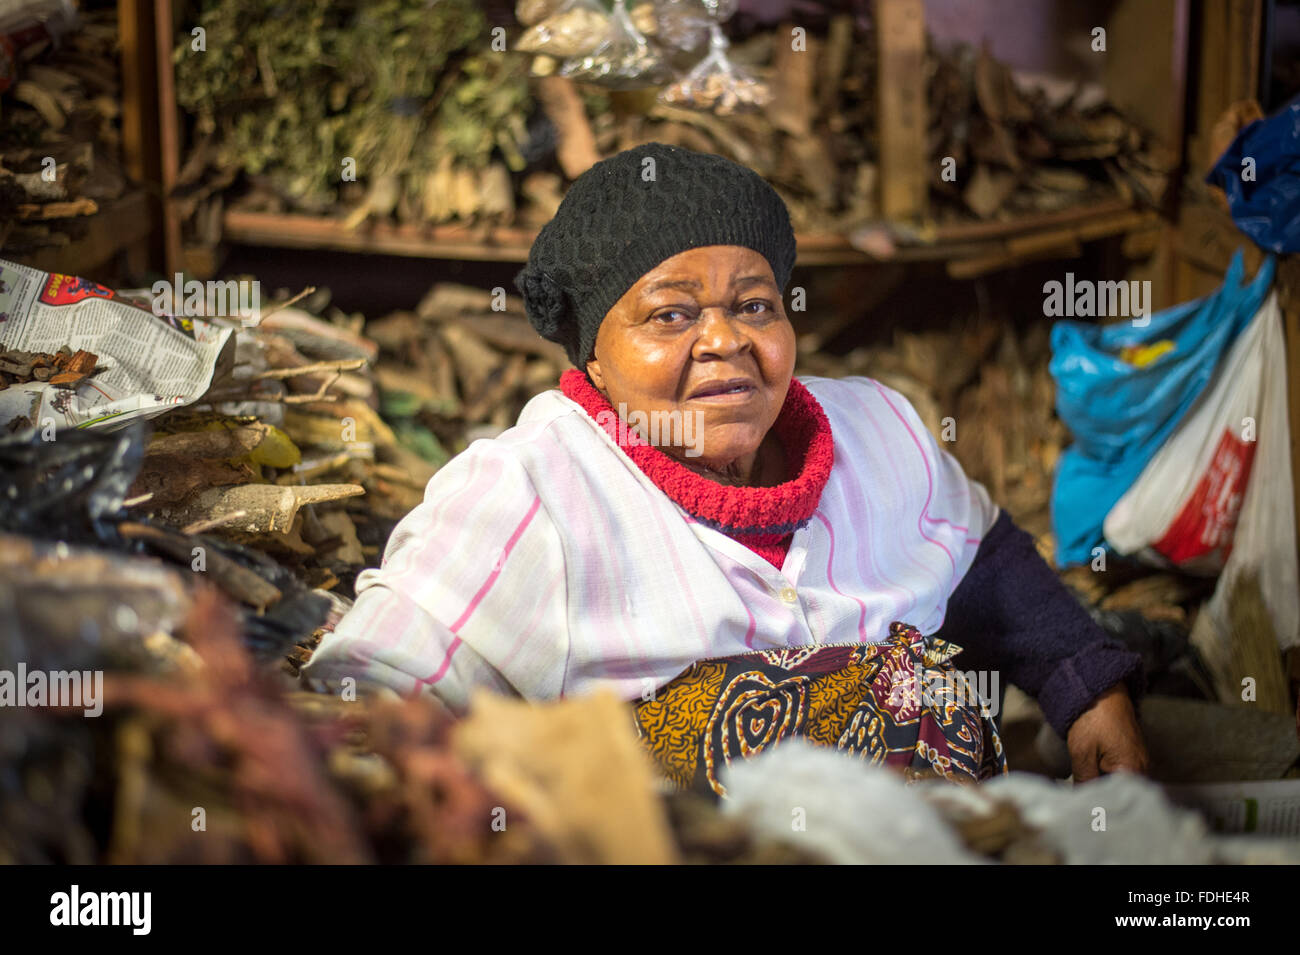 Comerciante vender medicamentos tradicionales a base de plantas en el comercio mayorista de Manzini producir y el Mercado Artesanal en Suazilandia, África Foto de stock